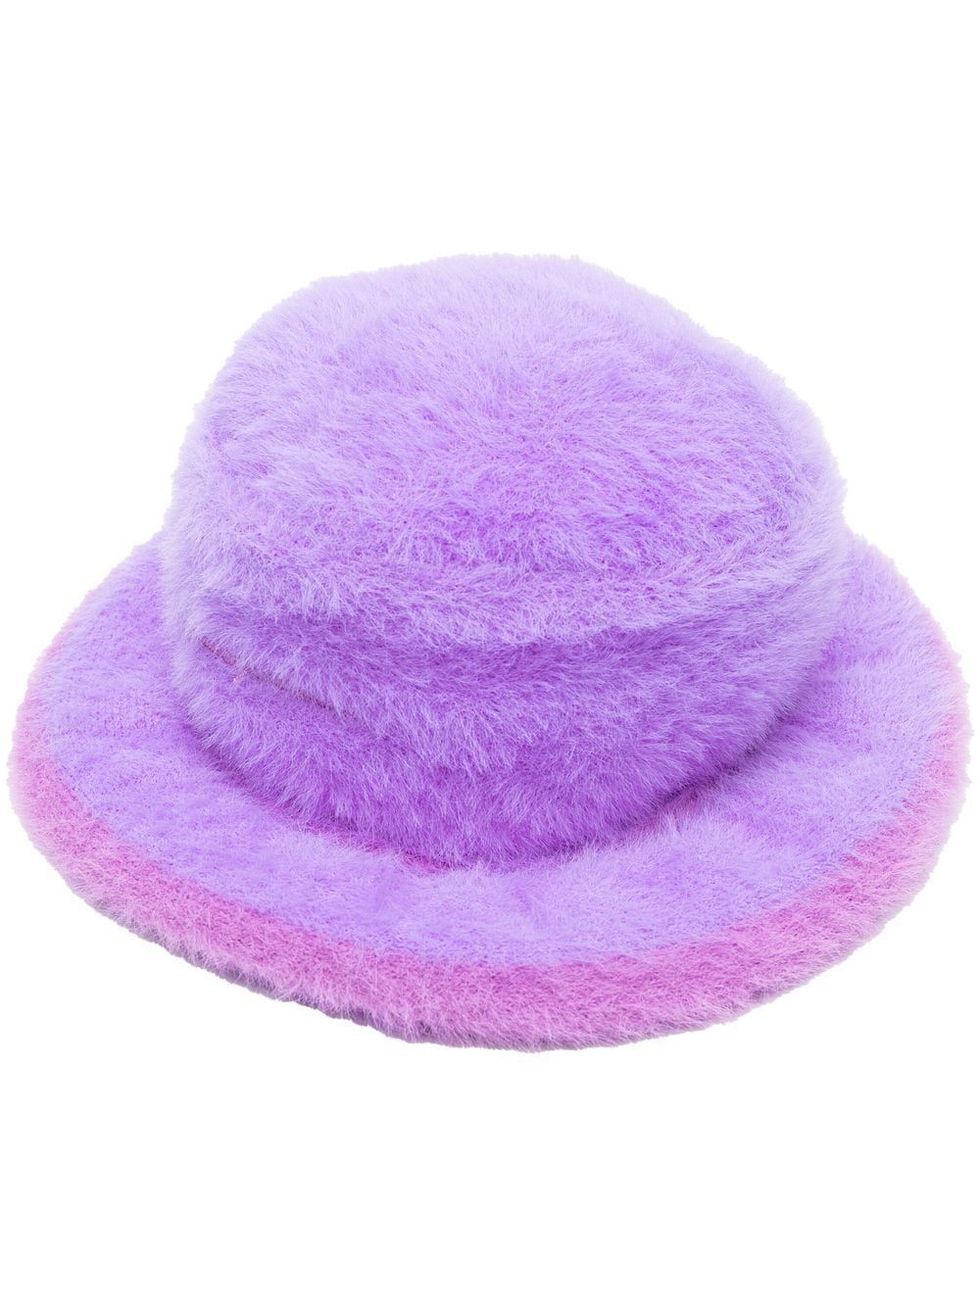 El 'bucket hat' de pelo es el accesorio clave del invierno